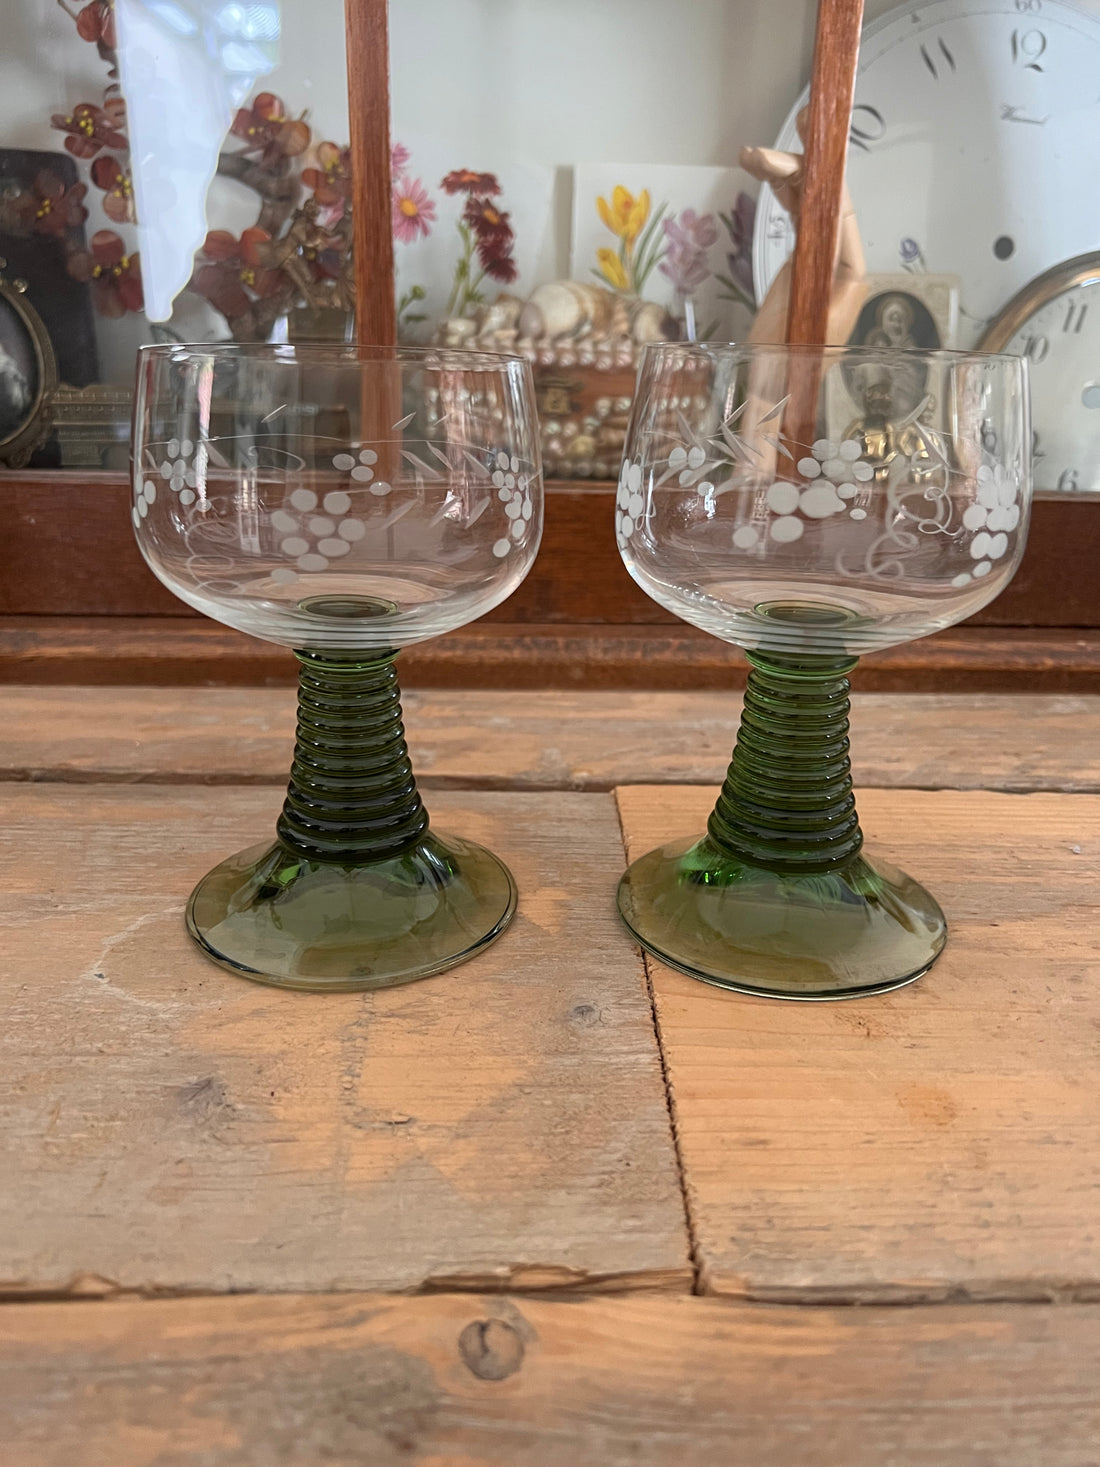 Roemer glas met groene voet